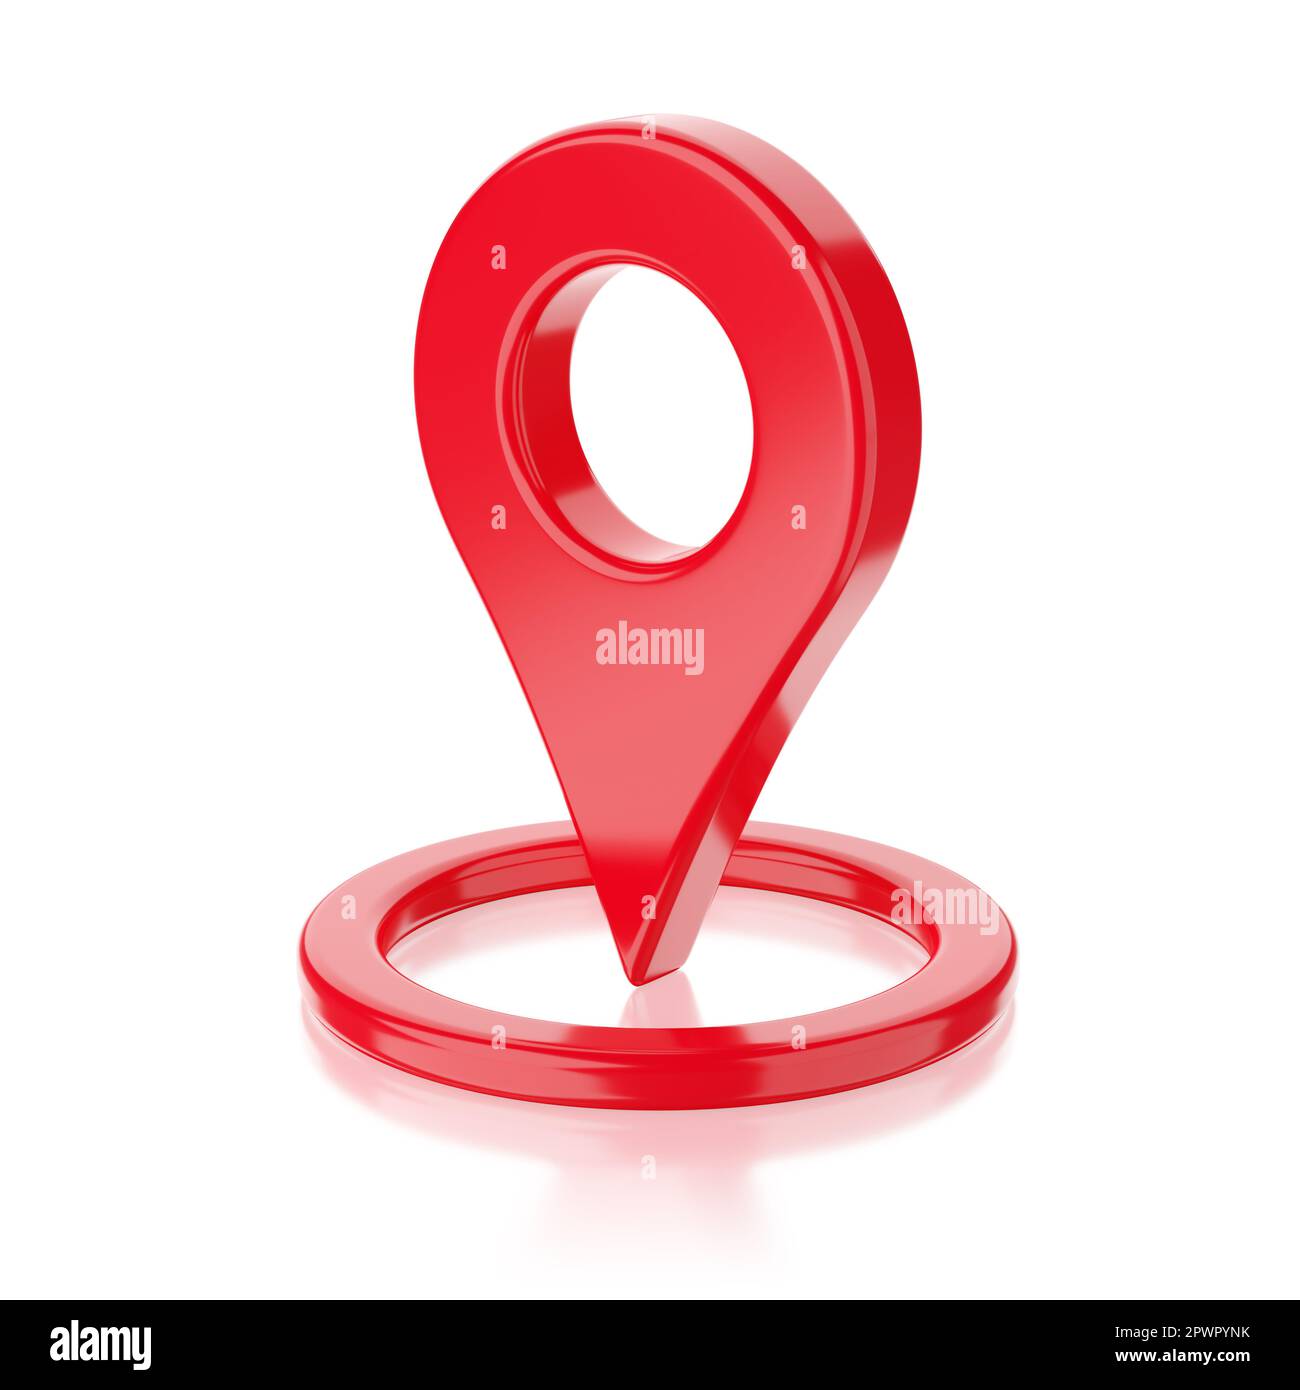 Cartografia lucida rossa con pin geo tag isolato su sfondo bianco. illustrazione del rendering 3d. Foto Stock